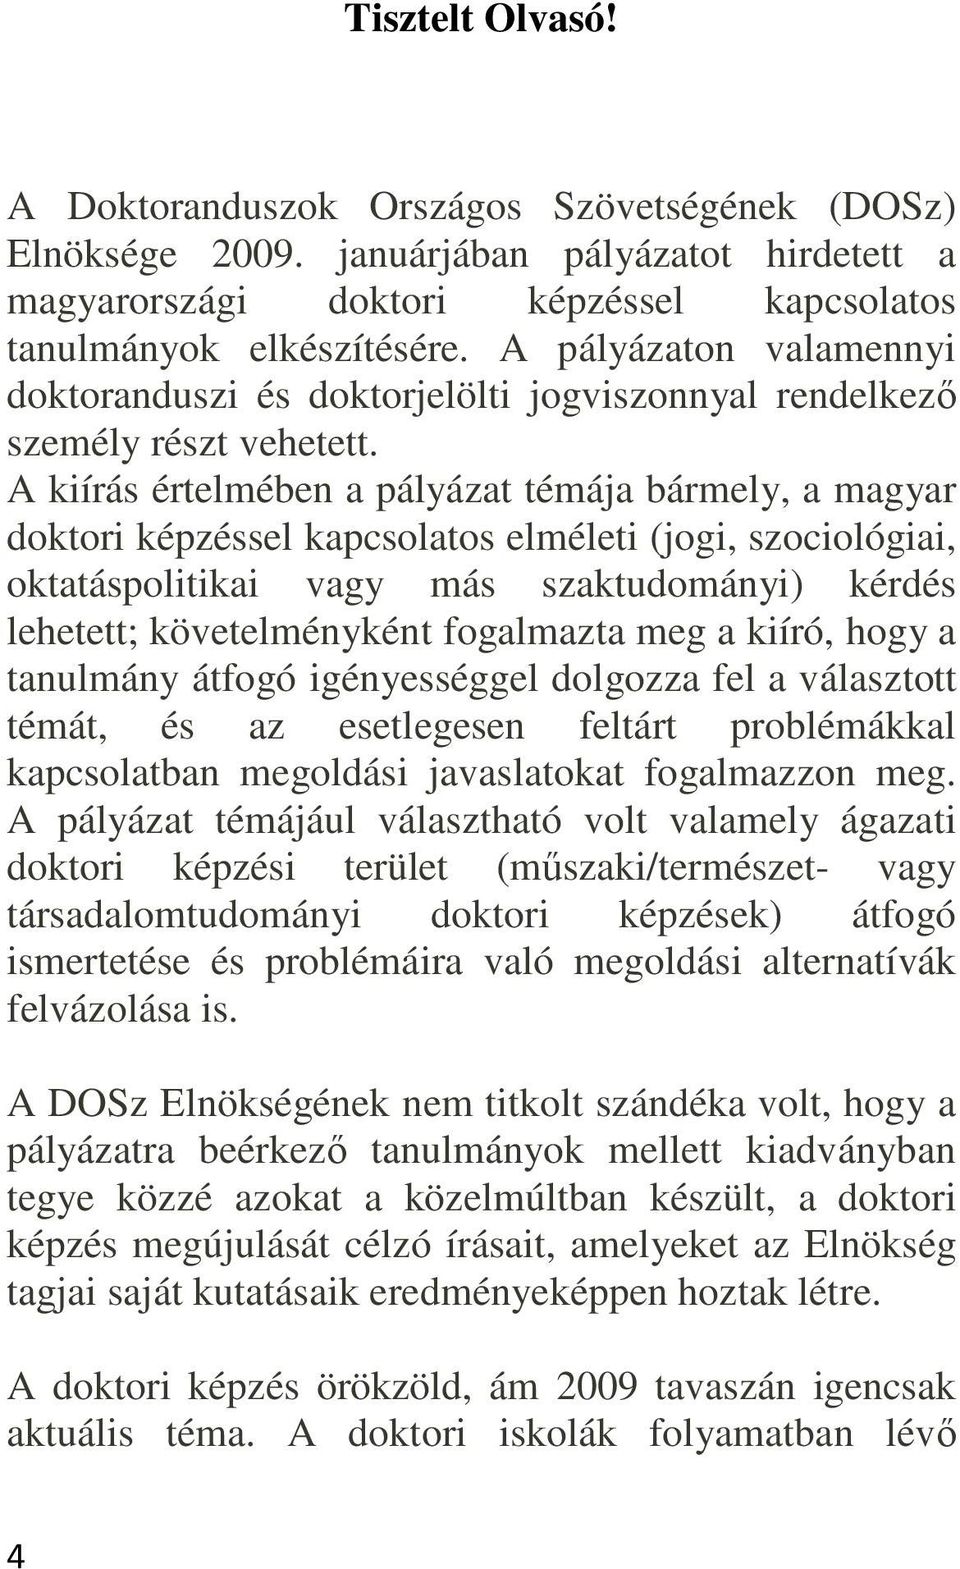 A kiírás értelmében a pályázat témája bármely, a magyar doktori képzéssel kapcsolatos elméleti (jogi, szociológiai, oktatáspolitikai vagy más szaktudományi) kérdés lehetett; követelményként